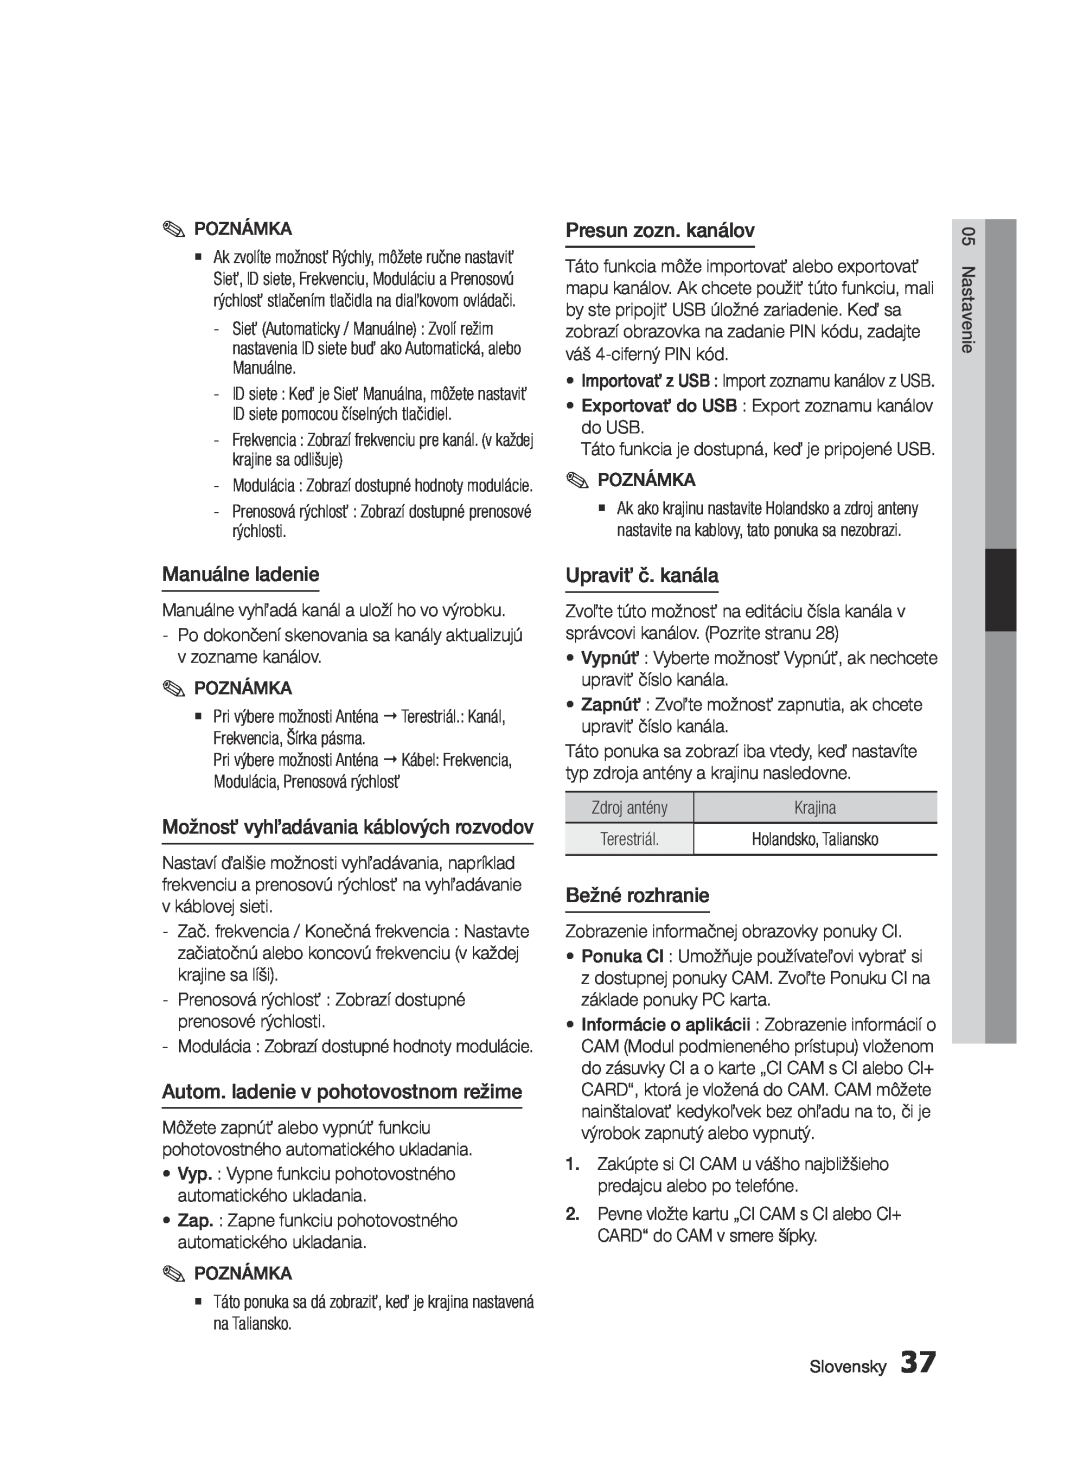 Samsung BD-E6300/EN manual Manuálne ladenie, Možnosť vyhľadávania káblových rozvodov, Autom. ladenie v pohotovostnom režime 